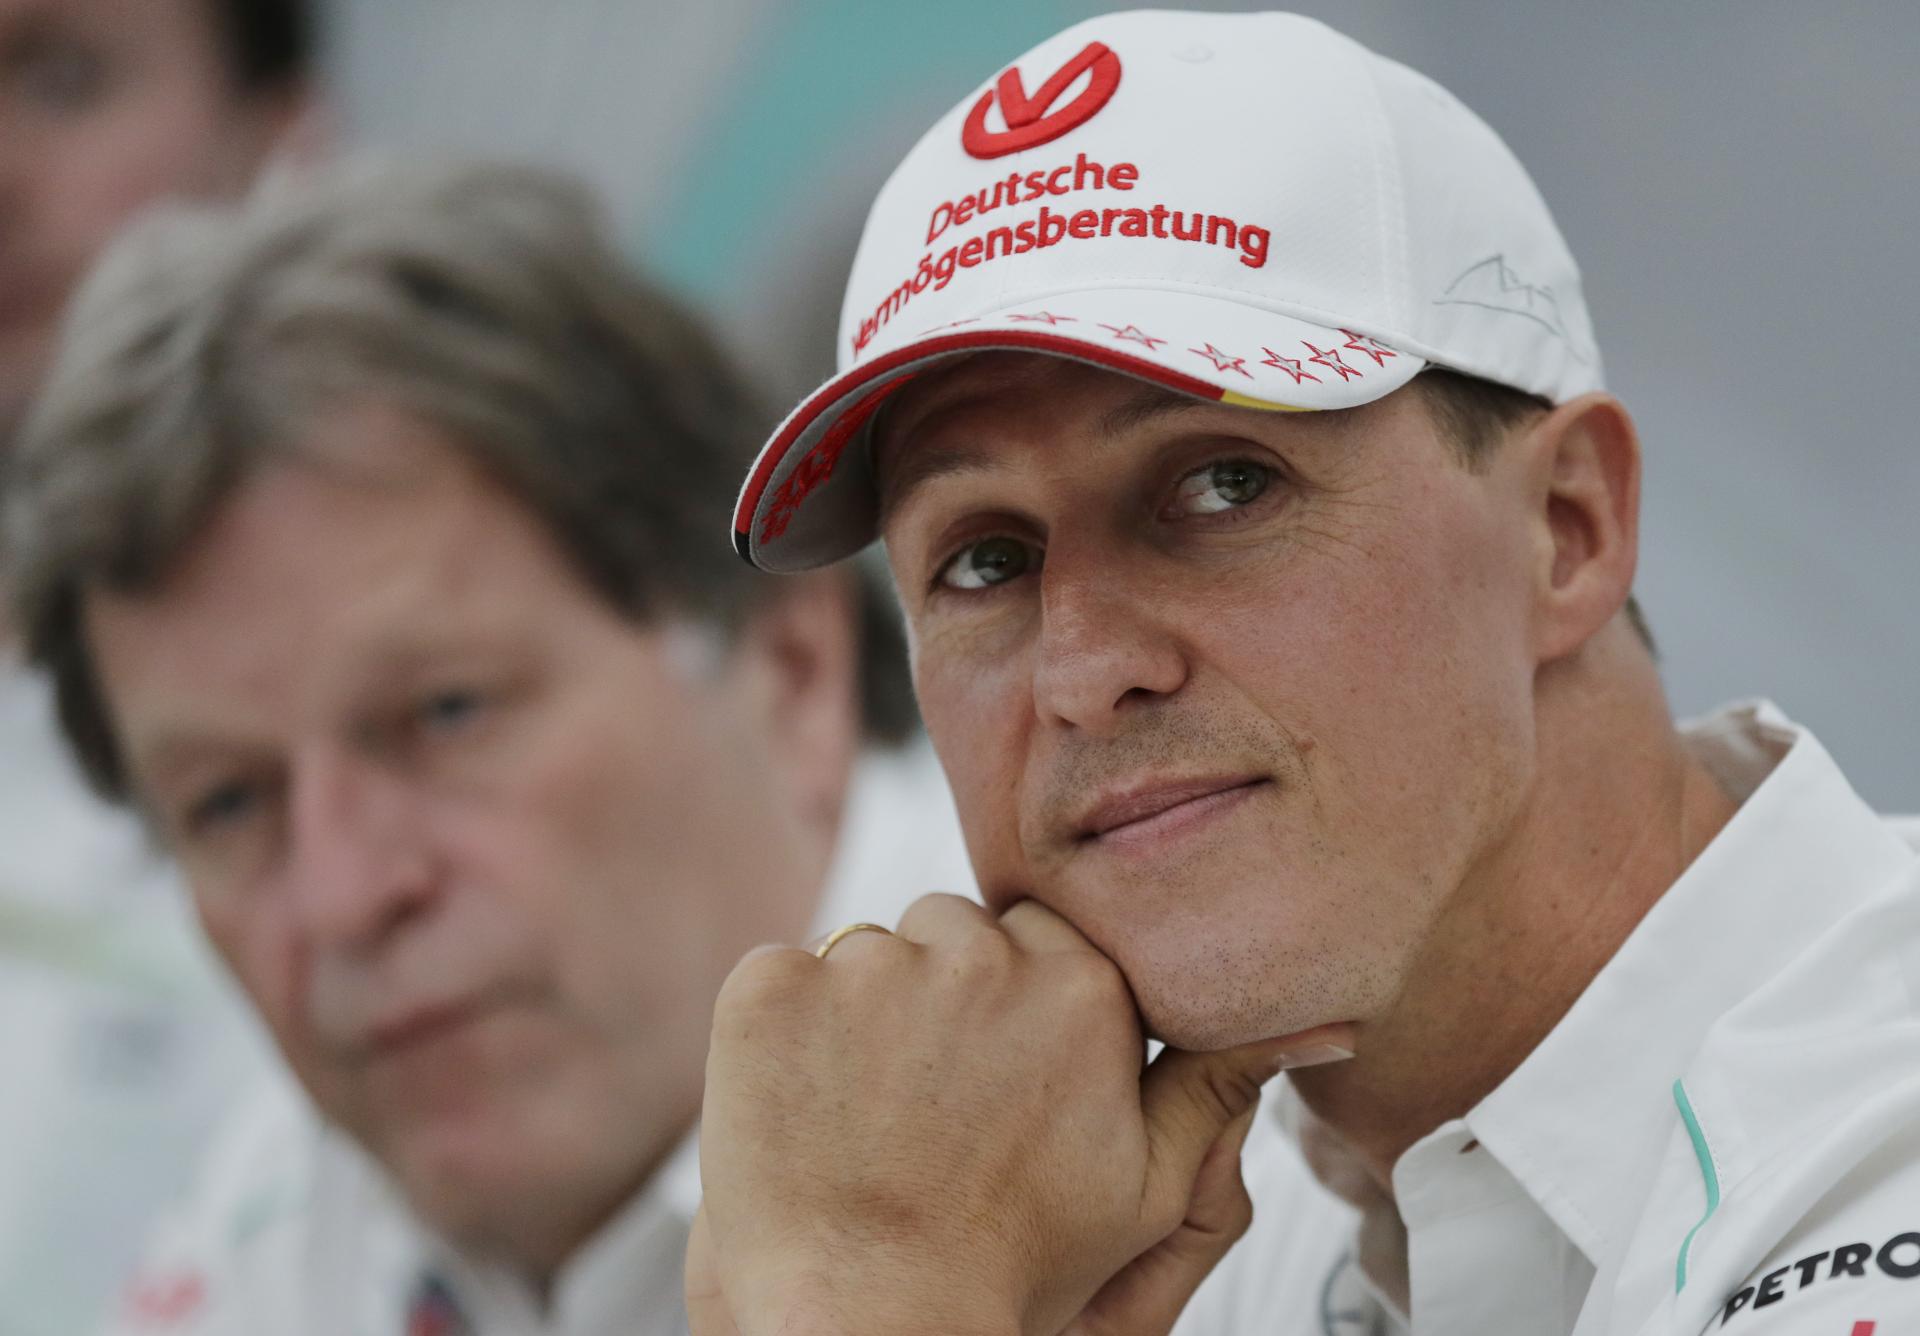 La conversation fictive de l’intelligence artificielle avec Schumacher a conduit au limogeage du rédacteur en chef en Allemagne